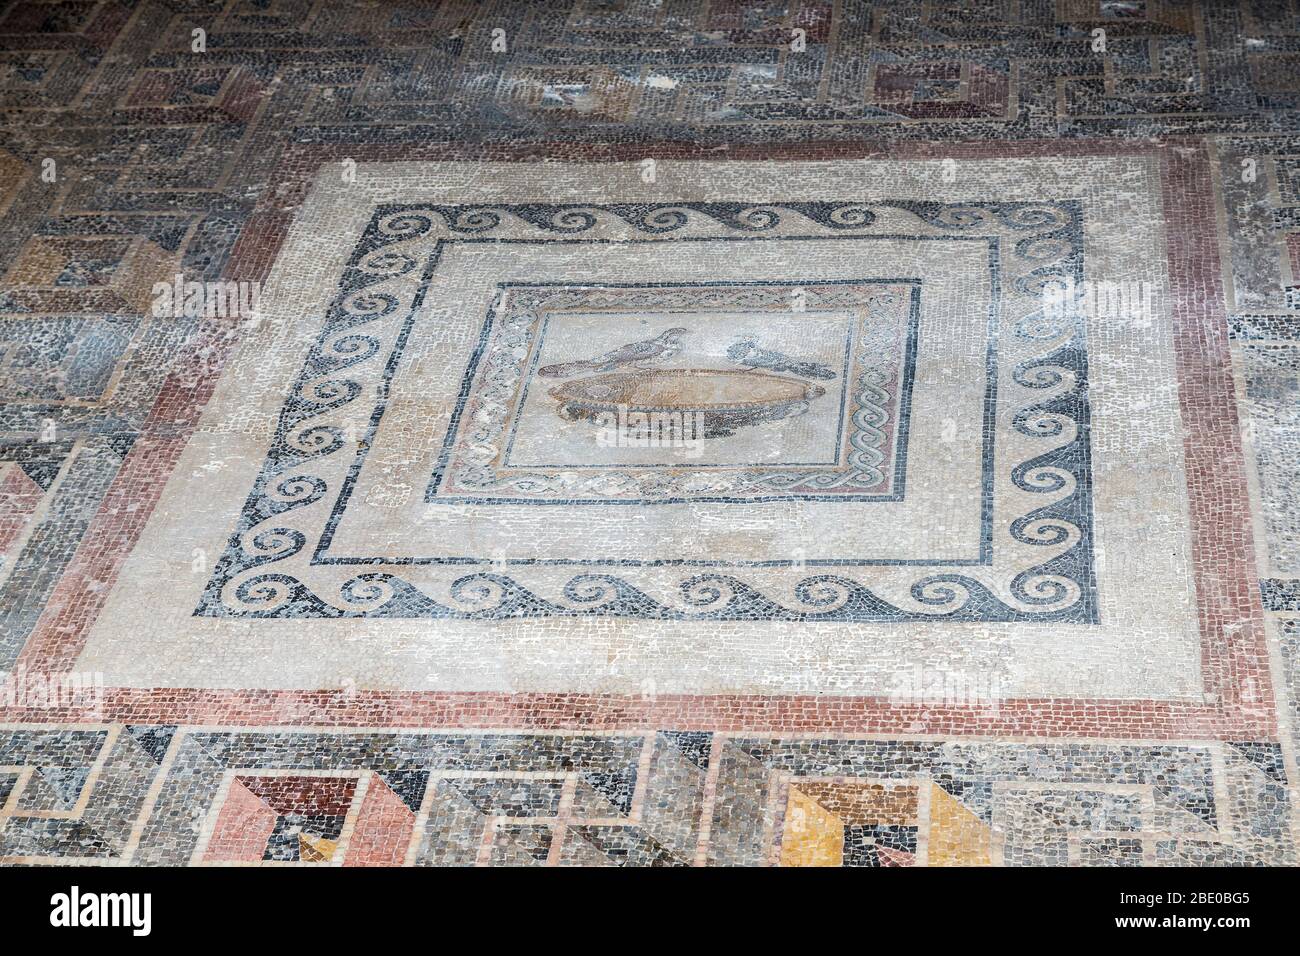 Pavimento in mosaico trovato nella villa romana, Domus Romana, Rabat, Malta  Foto stock - Alamy